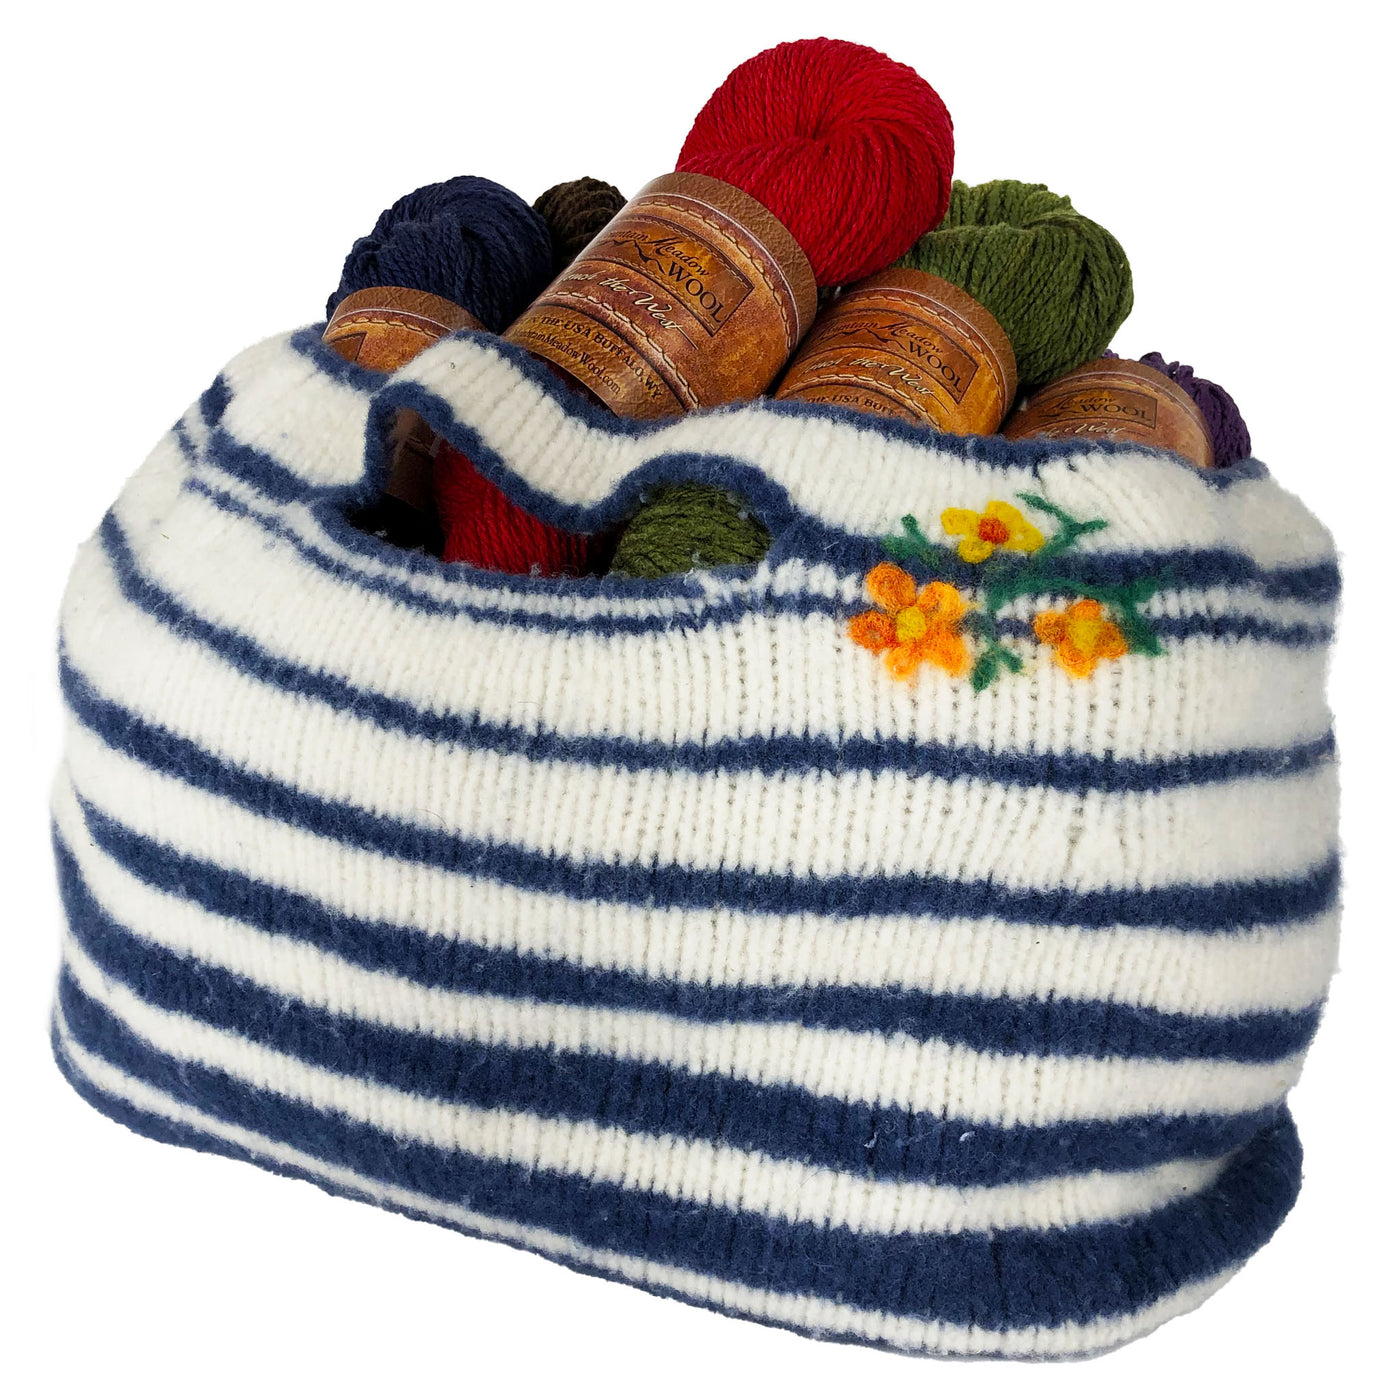 Felted Plains Bag Knitting Kit